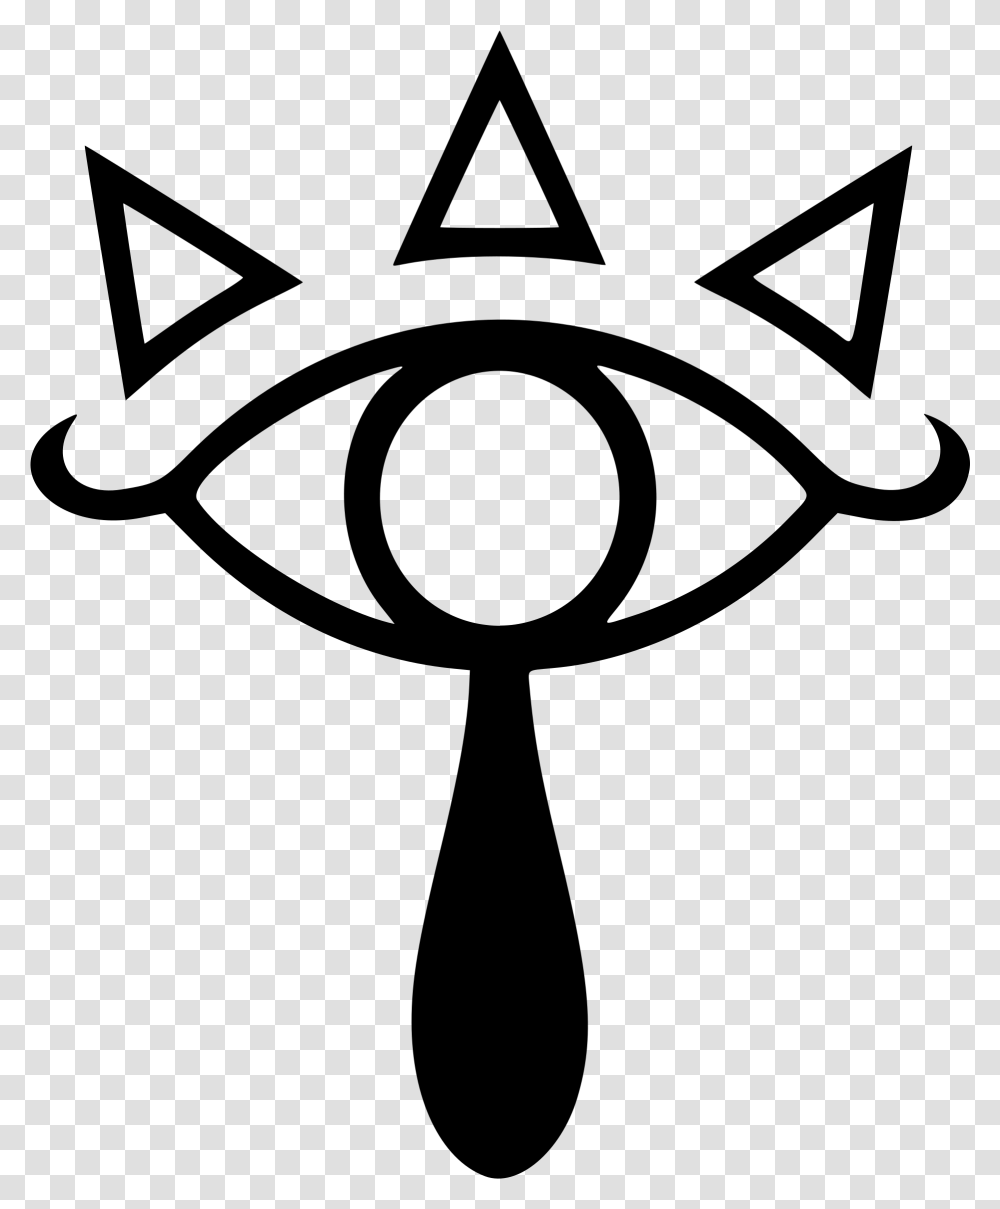 The Legend Of Zelda Zelda Eye Symbol, Gray, World Of Warcraft Transparent Png